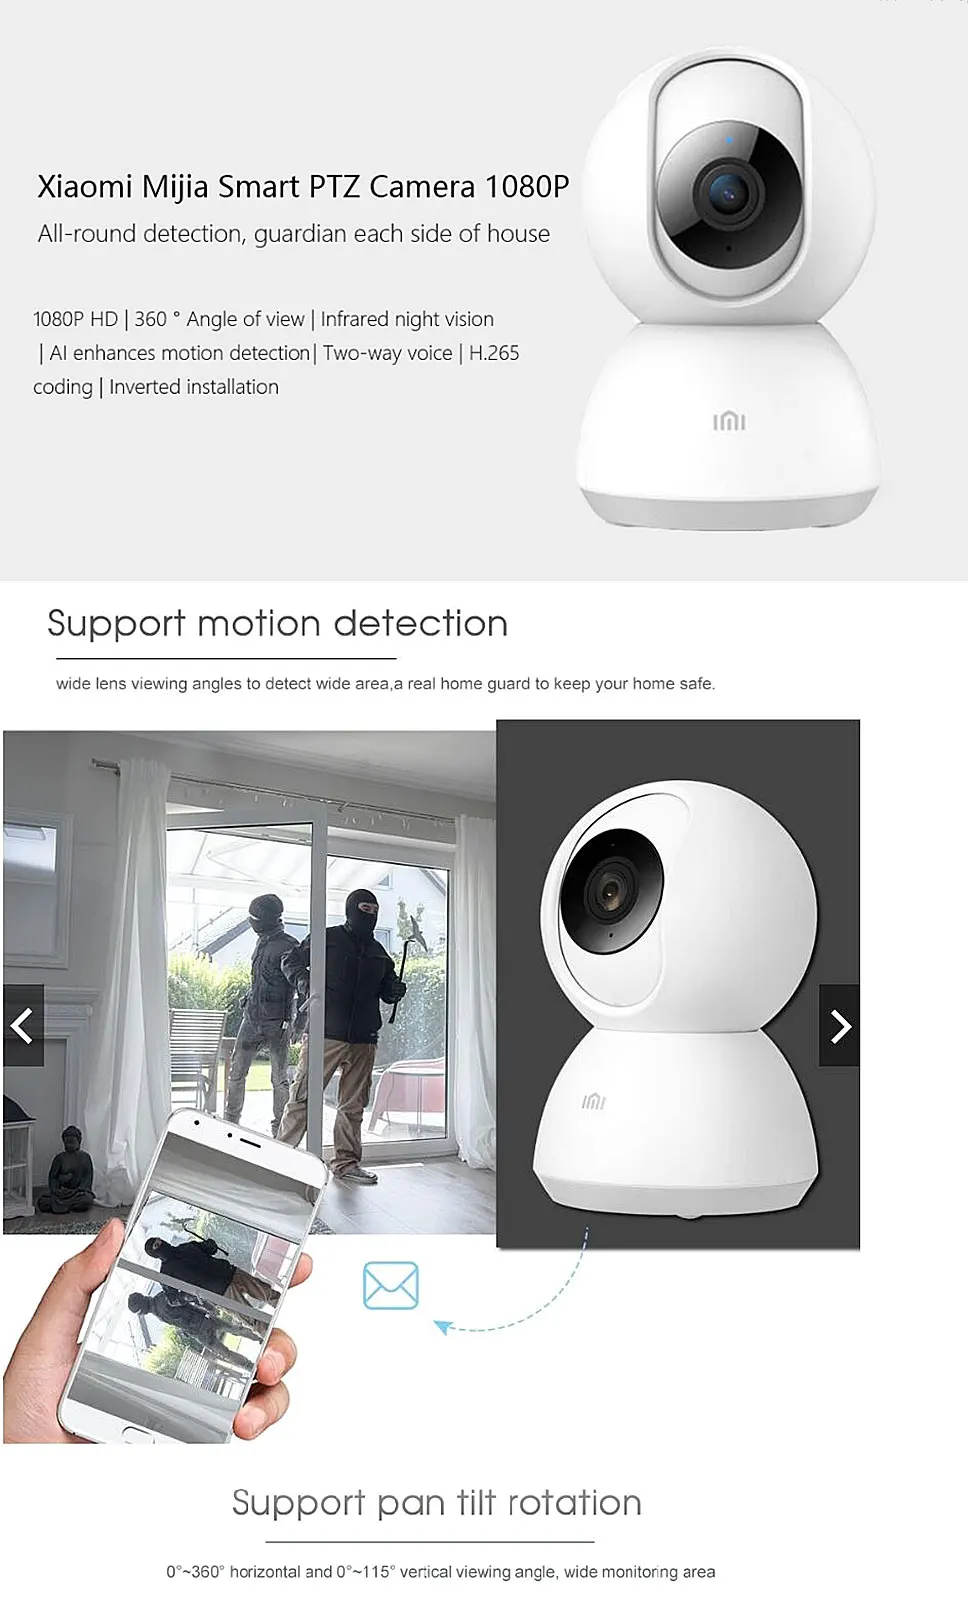 Xiao mi jia 360 градусов ночная версия IP смарт-камера WiFi голосовой Детский Монитор веб-камера для mi Home-глобальная версия Беспроводная камера